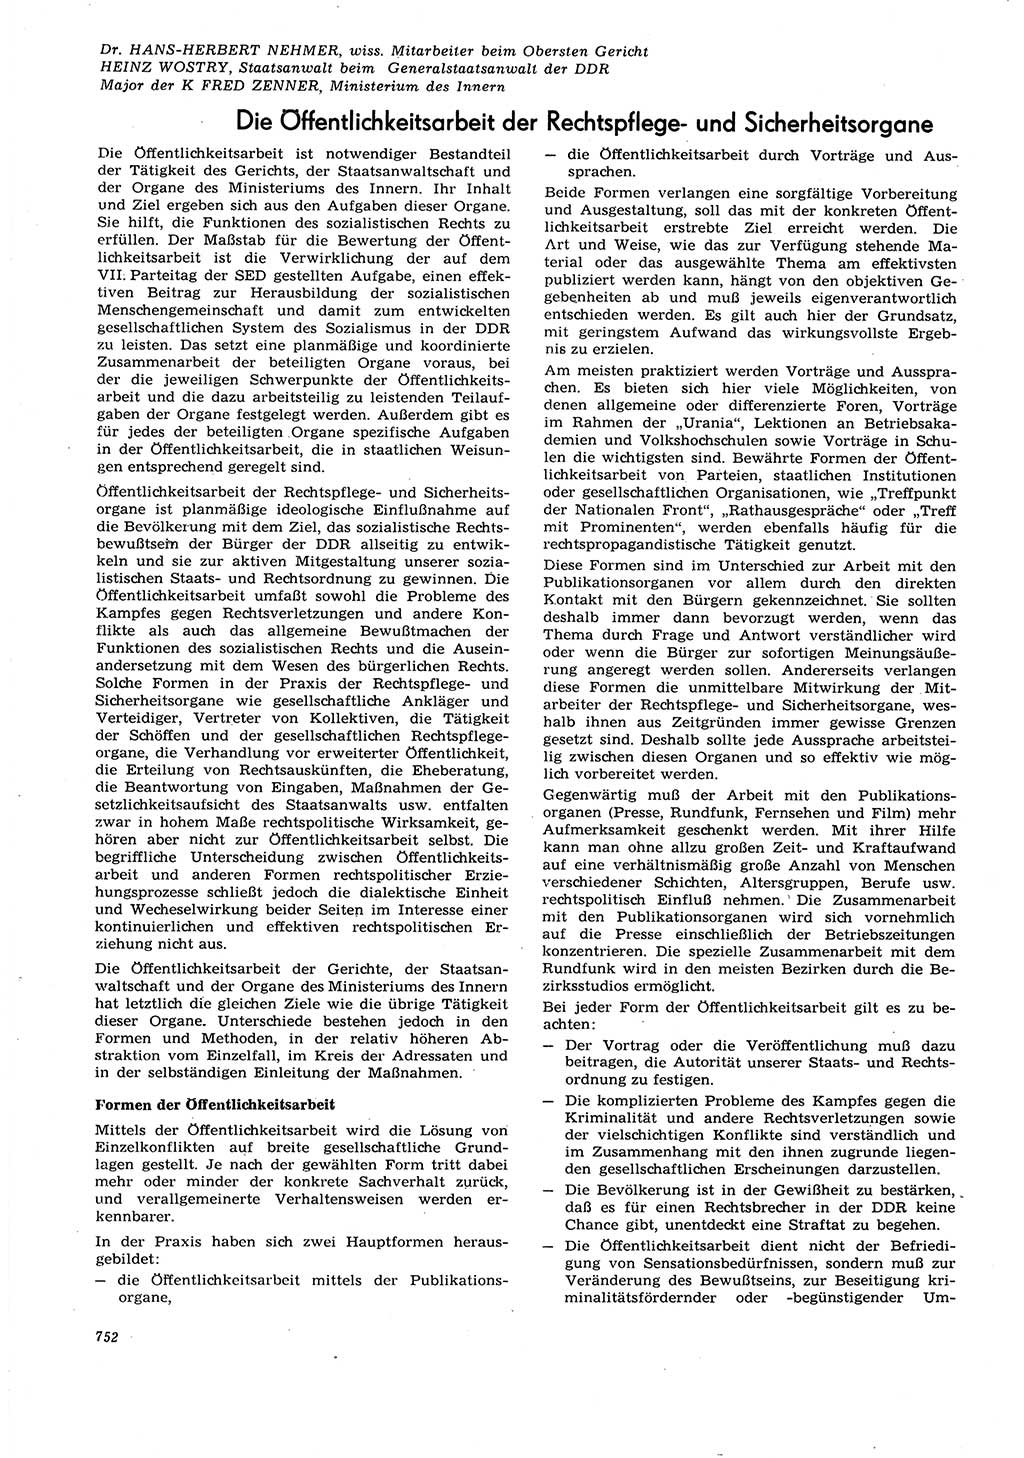 Neue Justiz (NJ), Zeitschrift für Recht und Rechtswissenschaft [Deutsche Demokratische Republik (DDR)], 21. Jahrgang 1967, Seite 752 (NJ DDR 1967, S. 752)